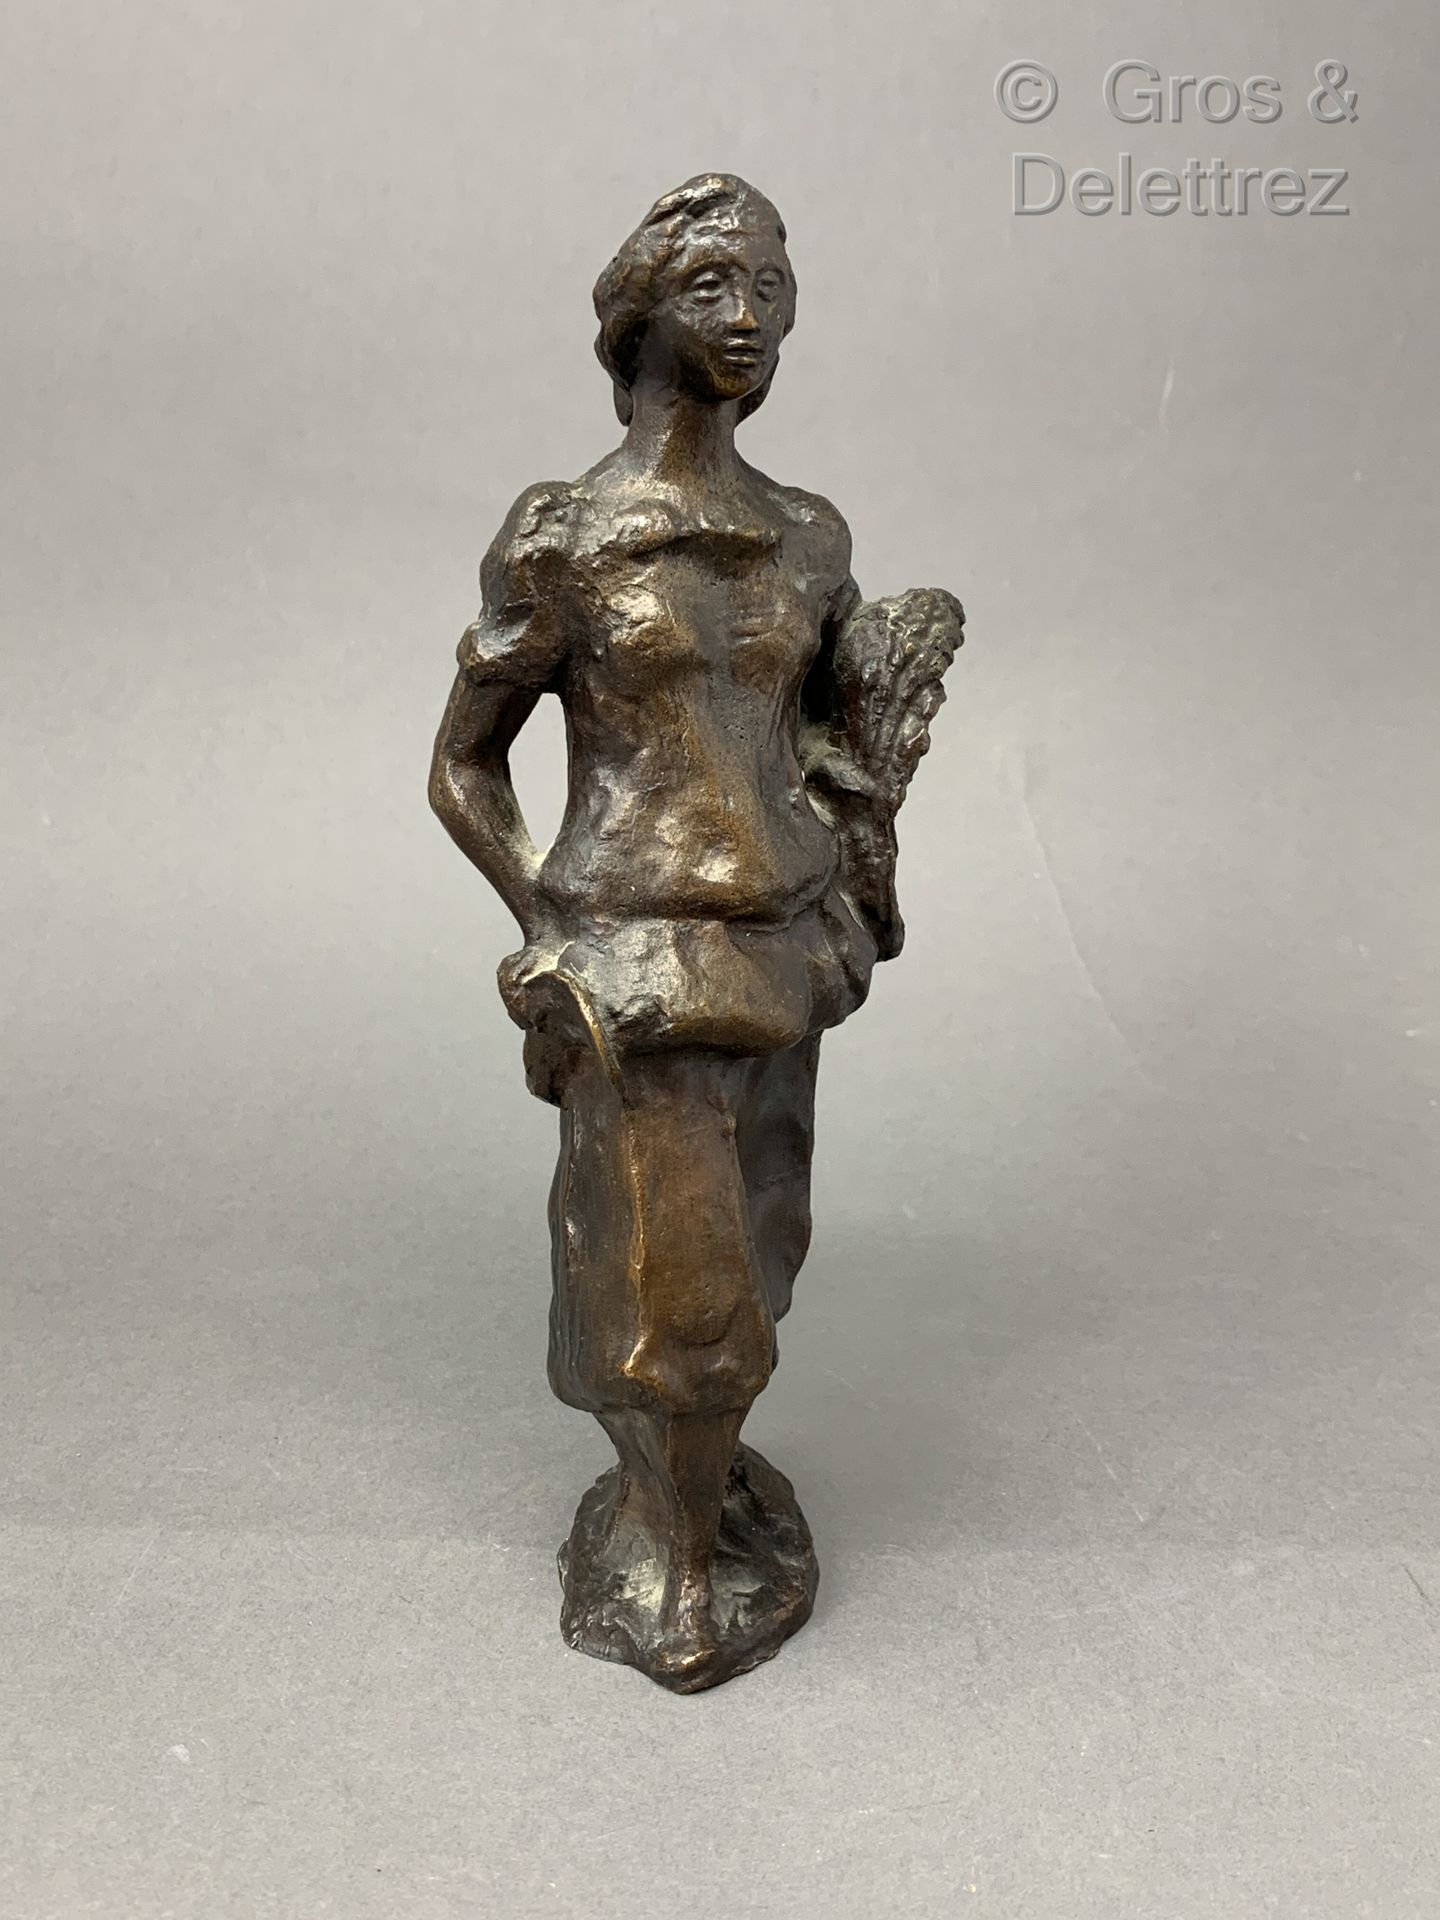 Null 1930-1940年的法国作品

棕色铜锈的女人铜雕

签名的痕迹

高：22厘米